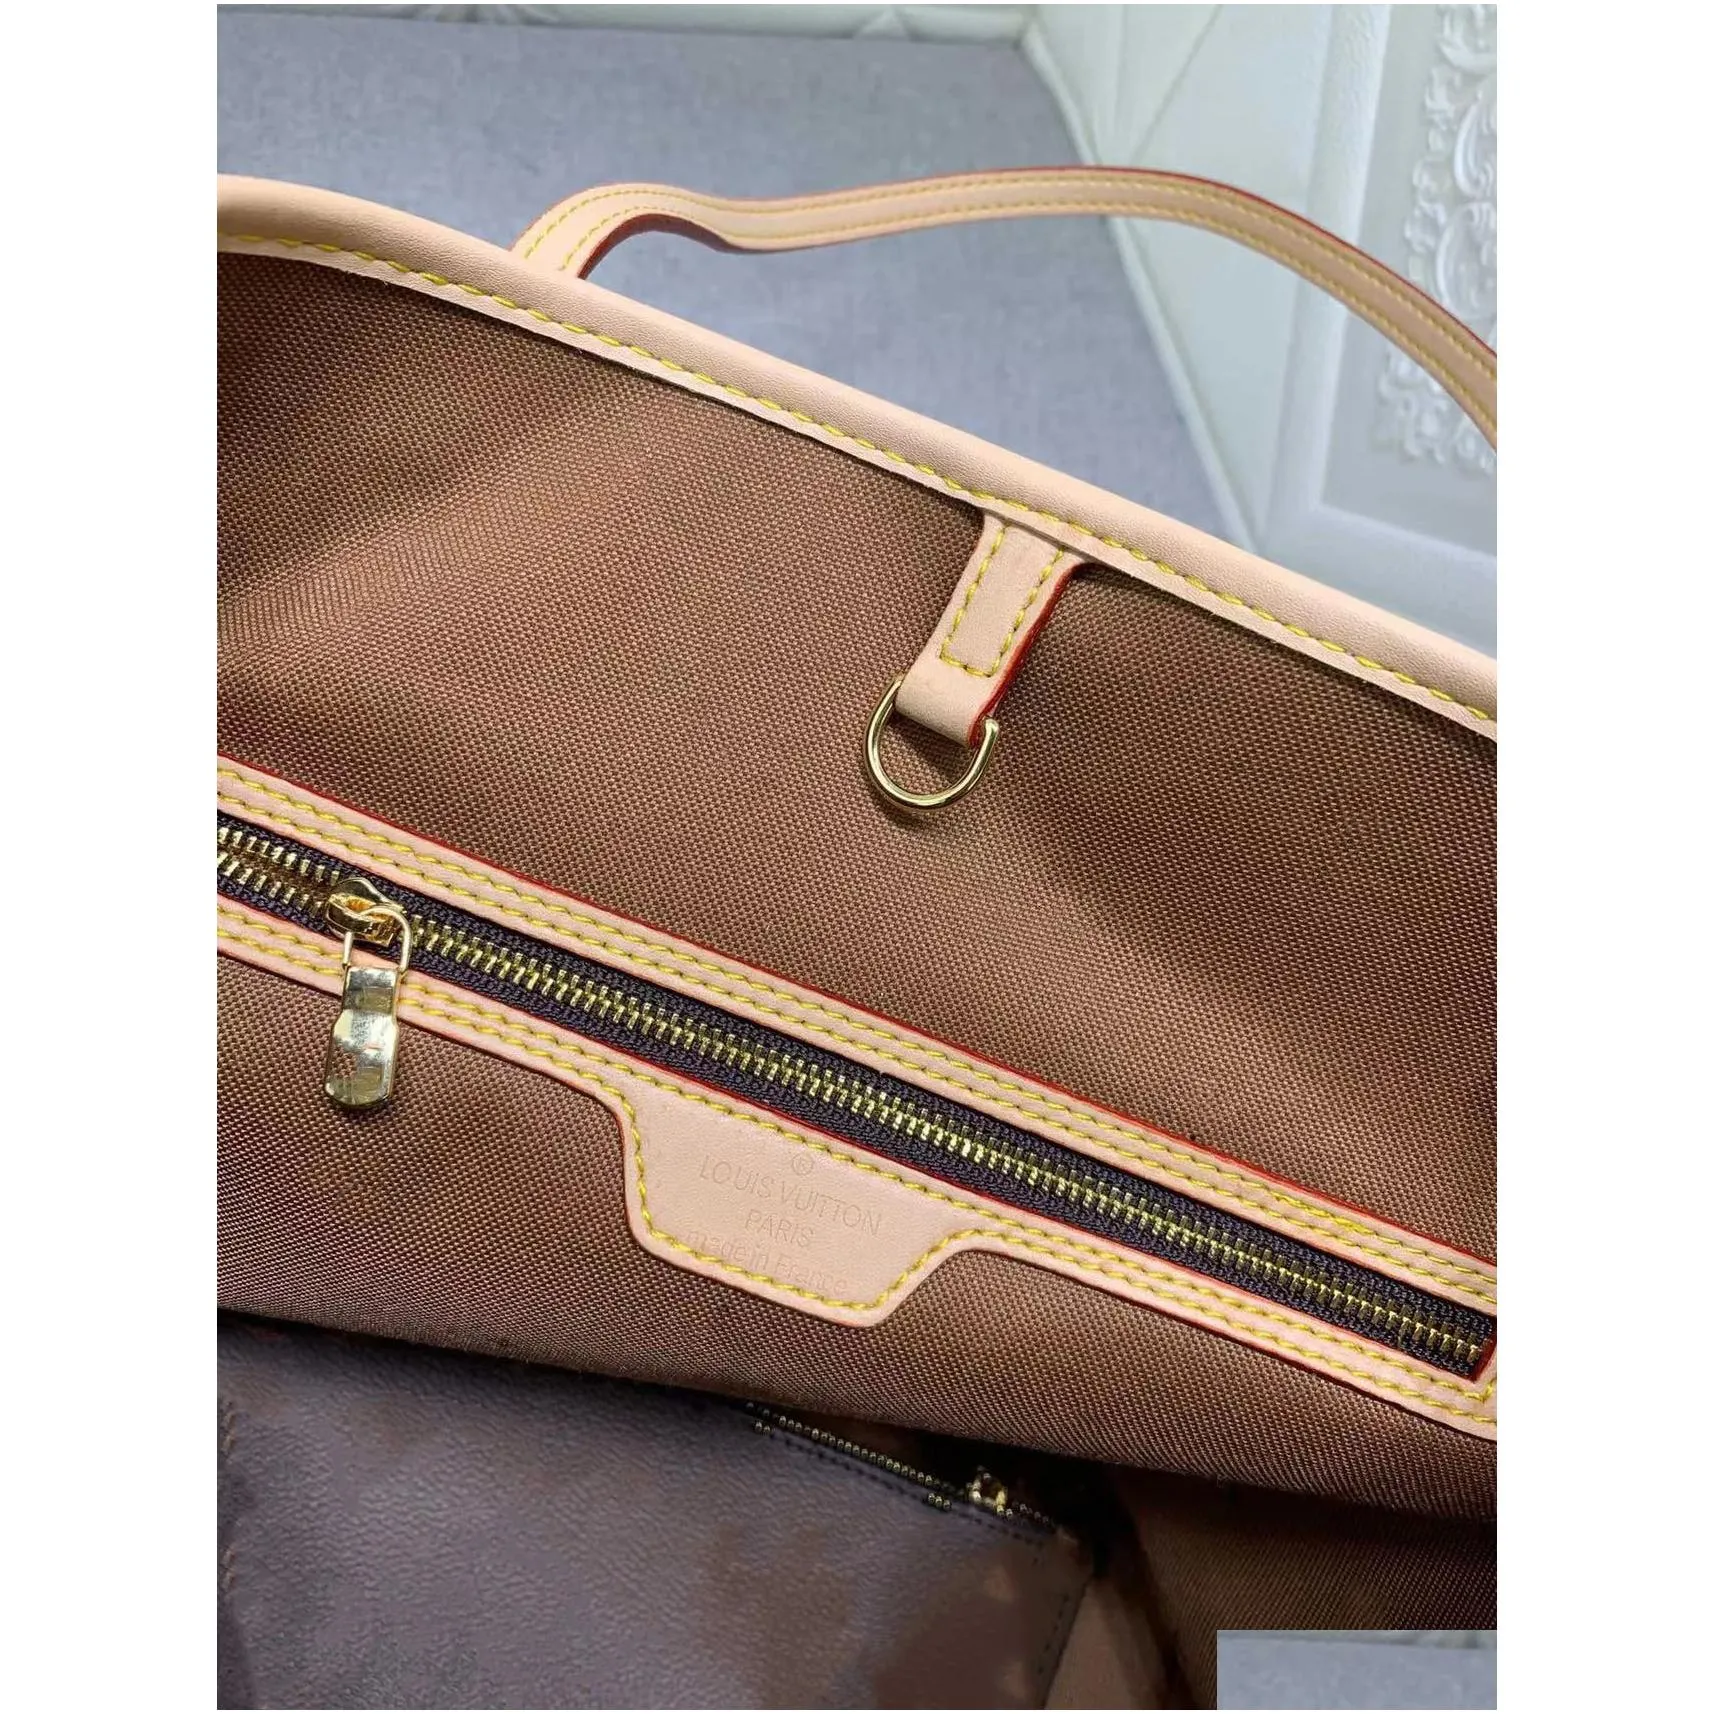  luxurys designers bags handbag purses woman fashion double bread clutch purse shoulder bags chain bag 8886666